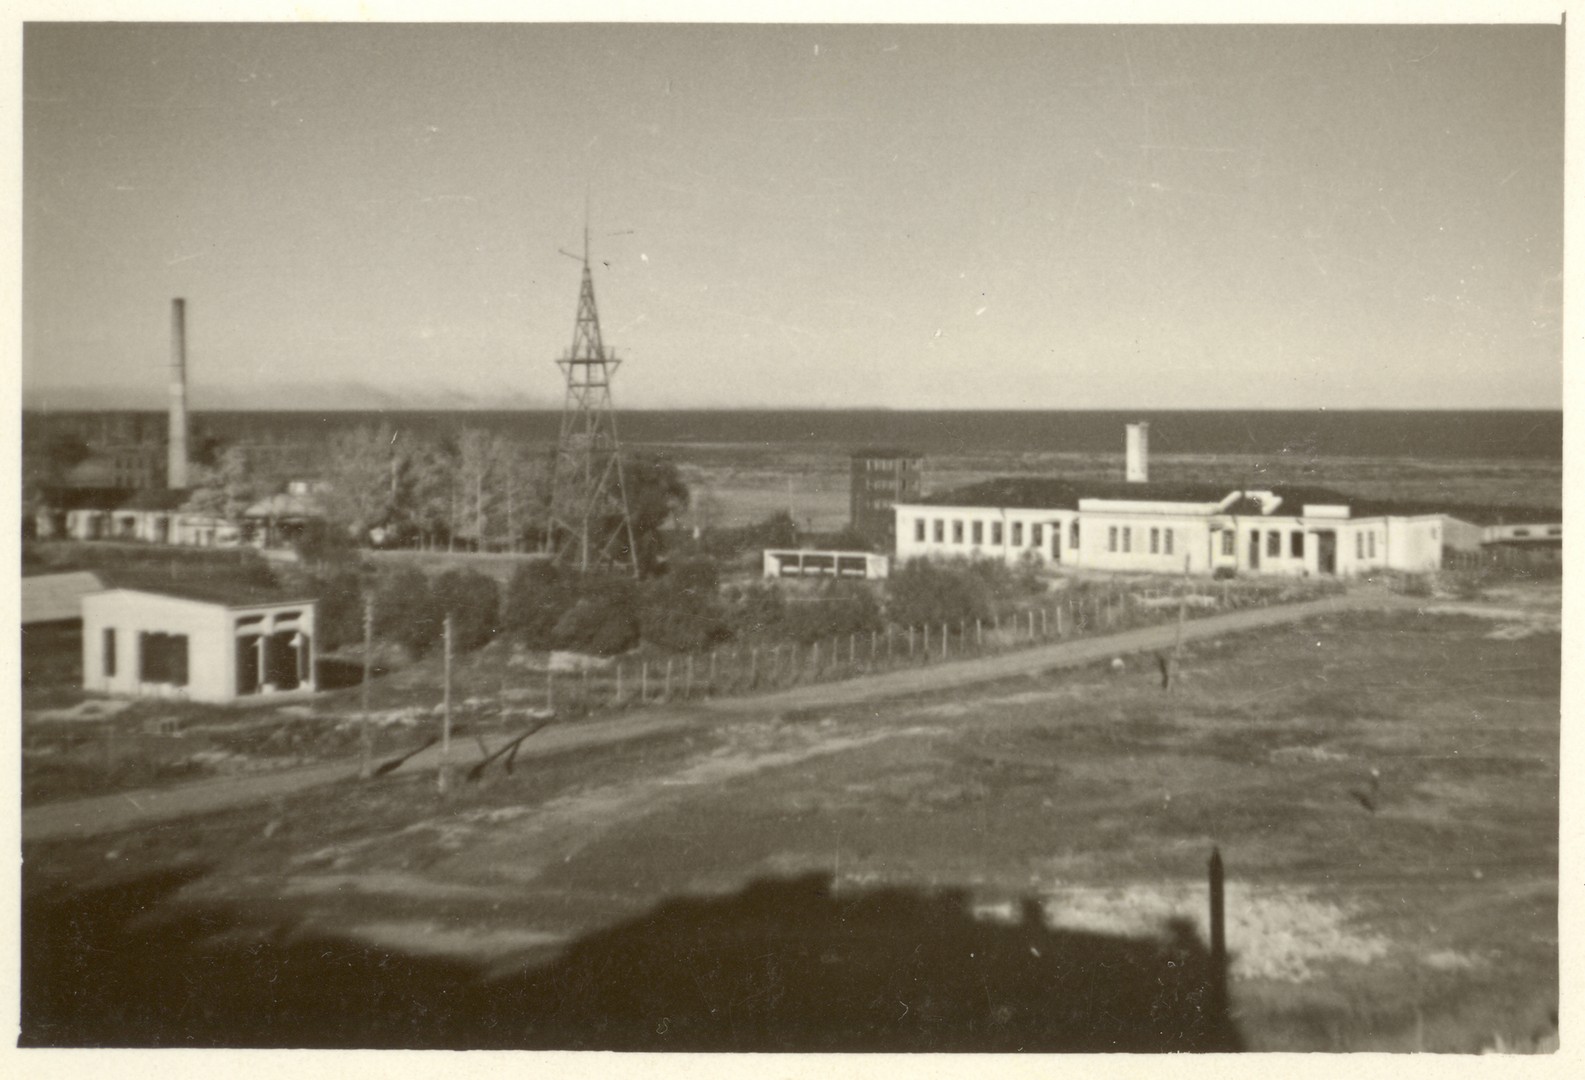 Завод Пишмаш. Осень 1941 года. Нем. фото из кол. Д. Жукова